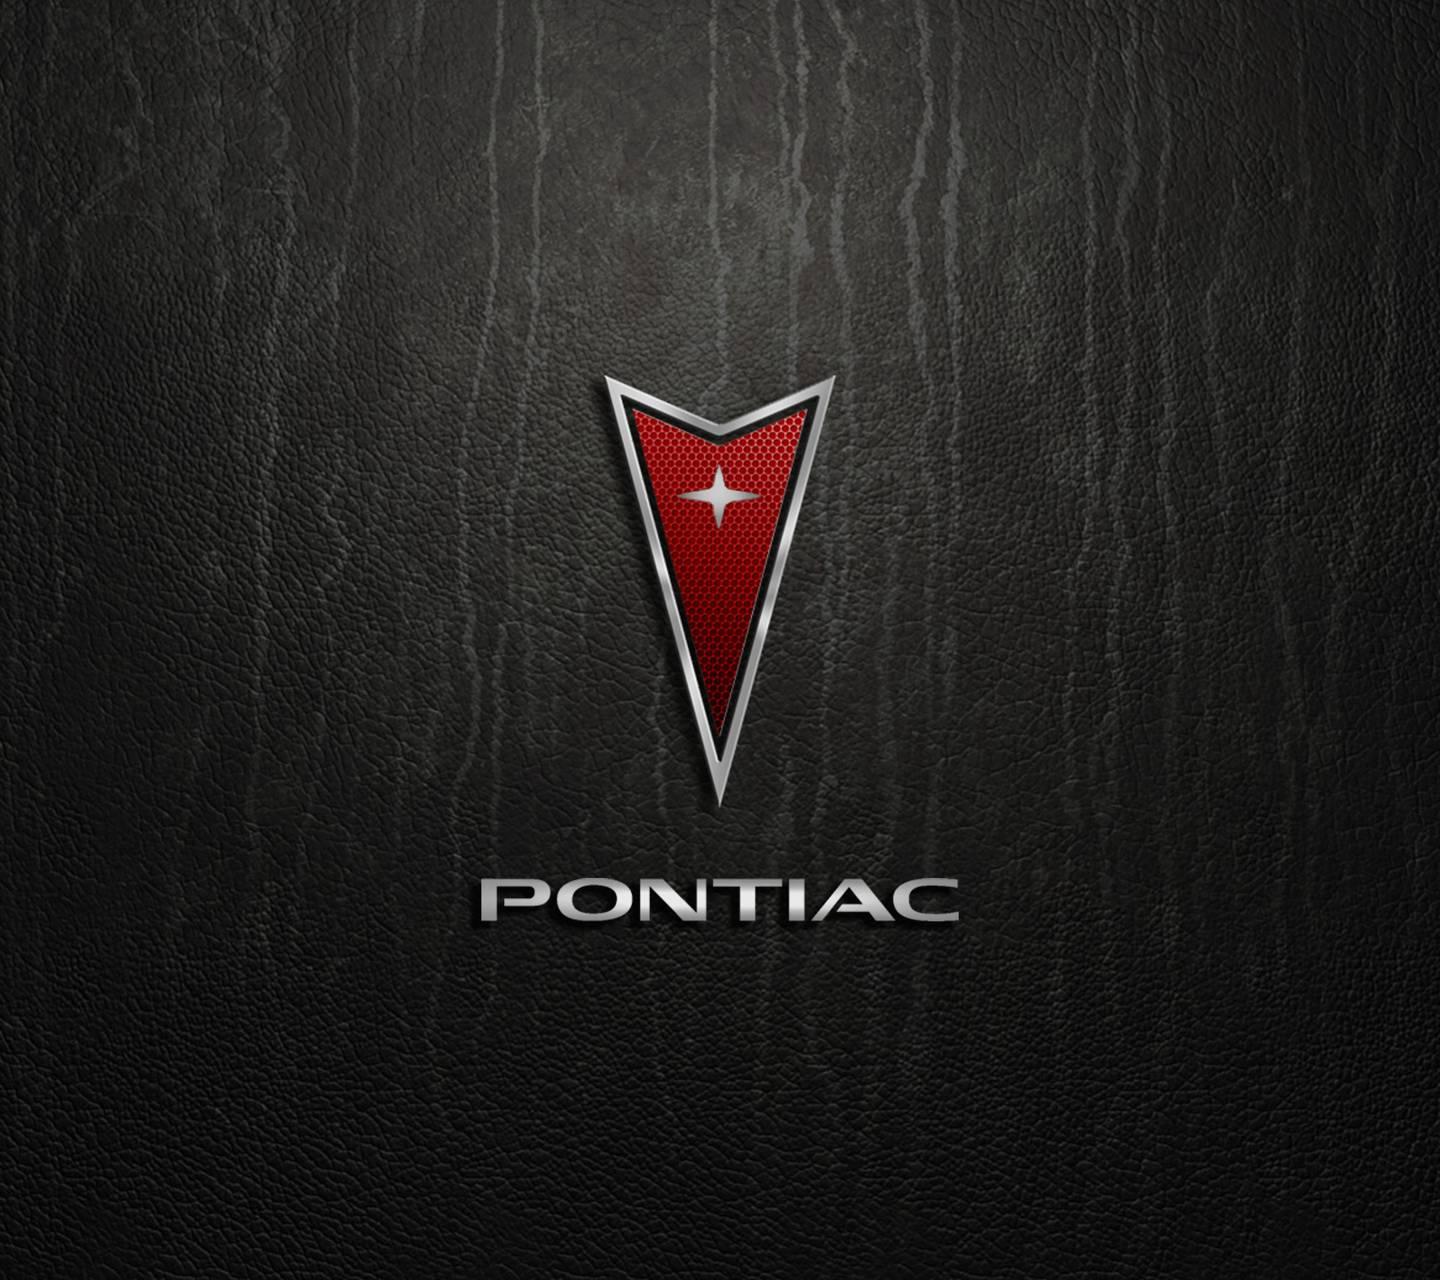 2002-04 Pontiac Logo : r/2000sNostalgia